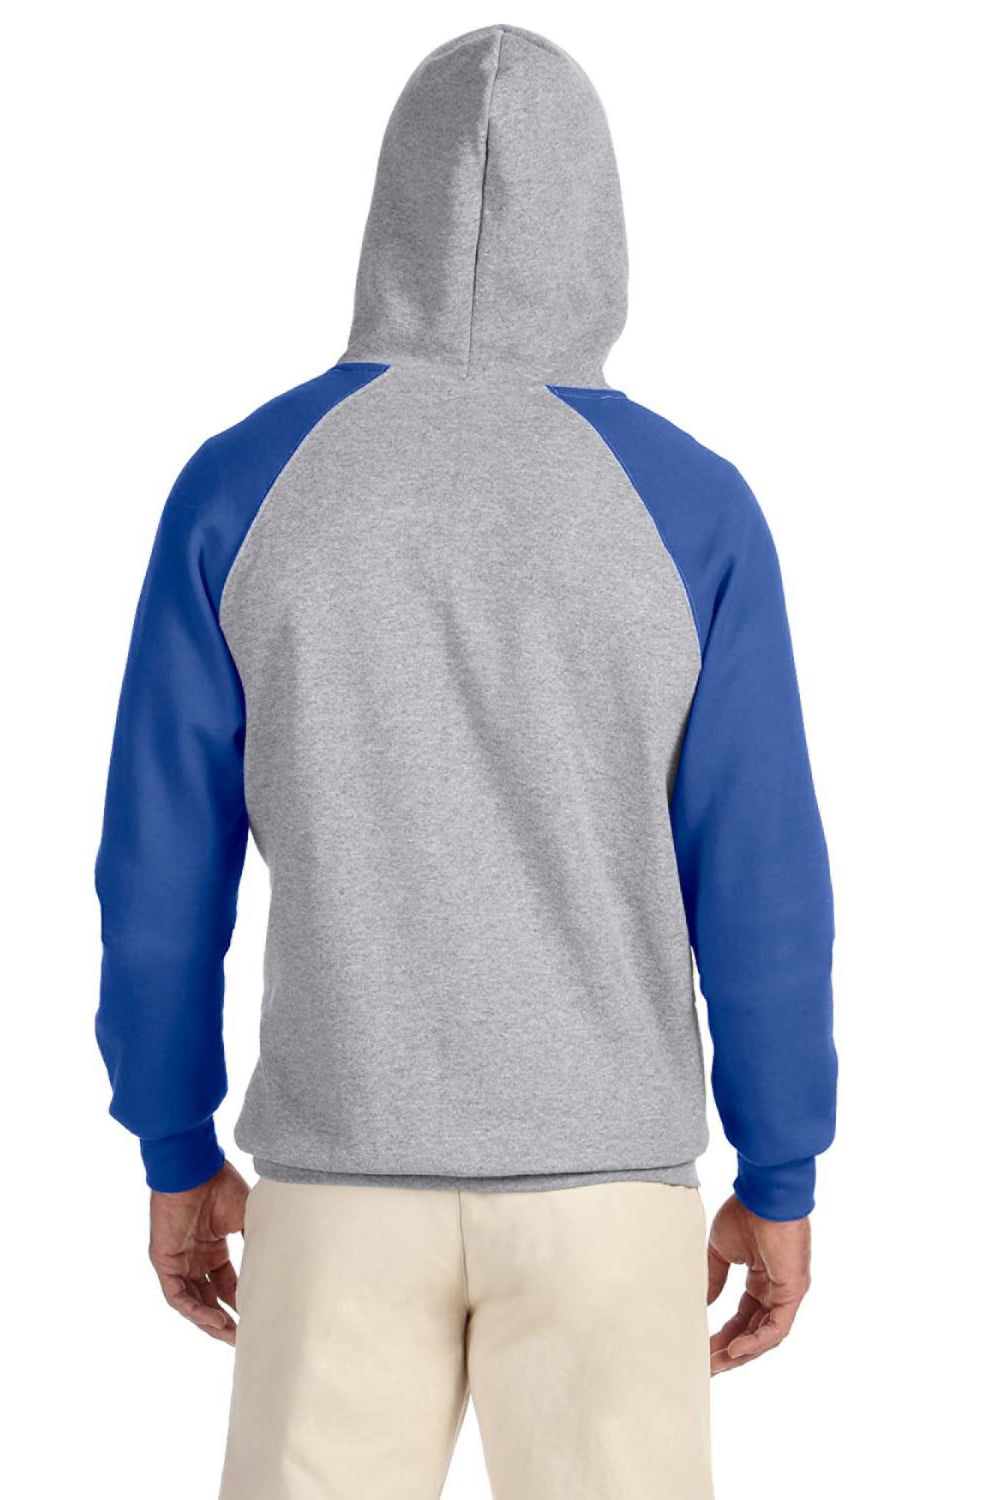 Jerzees 96CR Mens NuBlend Fleece Hooded Sweatshirt Hoodie Oxford Grey/Royal Blue Back